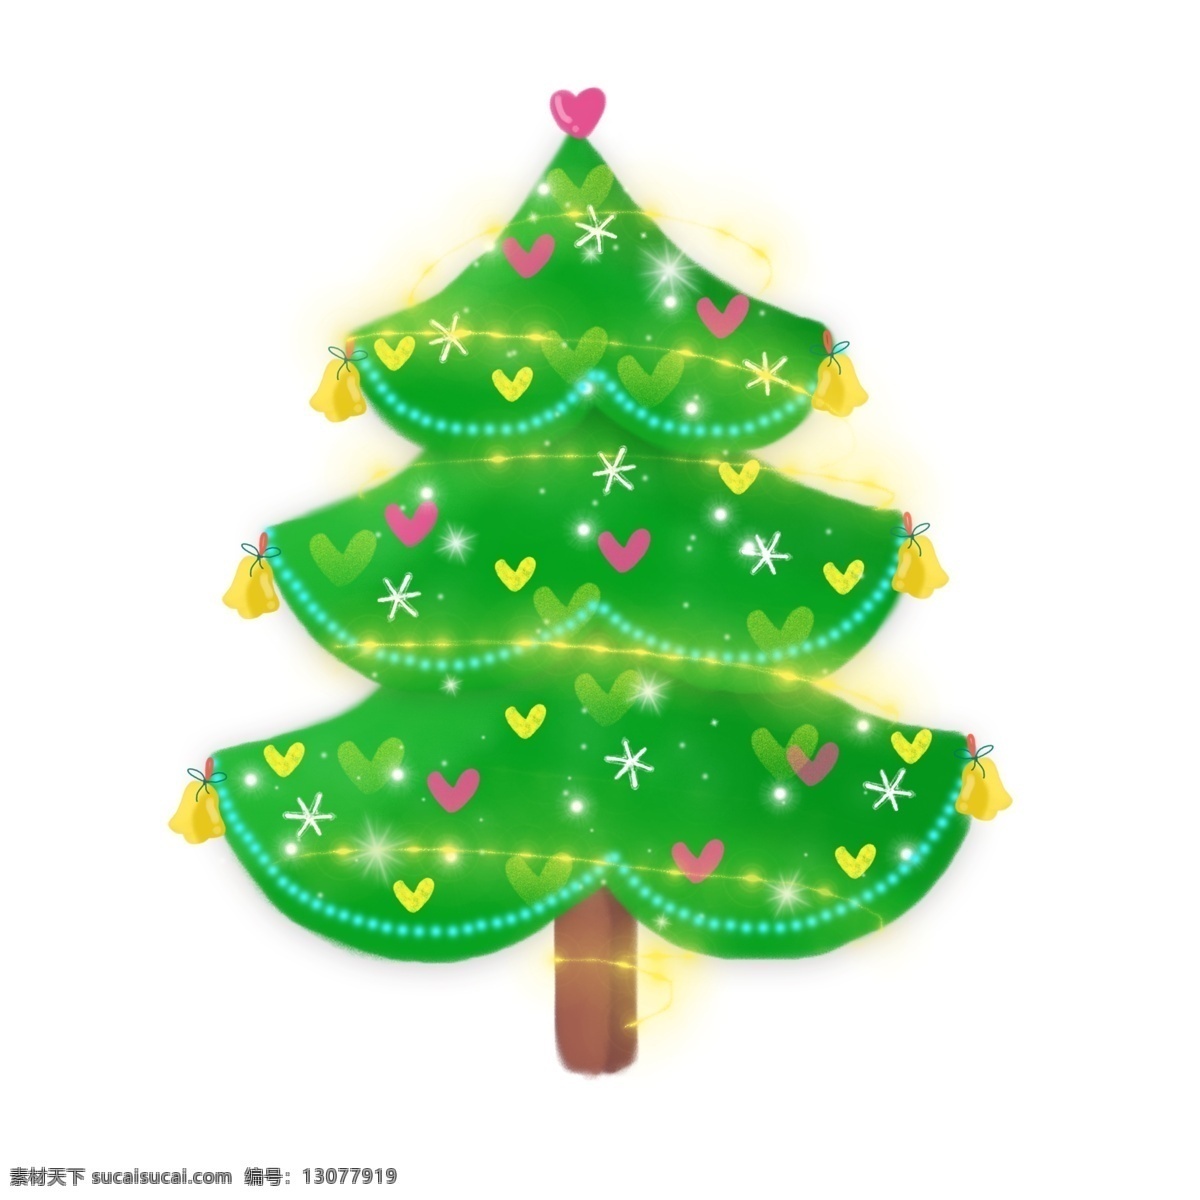 可爱 圣诞节 手绘 插画 礼物 过节 圣诞树 彩球